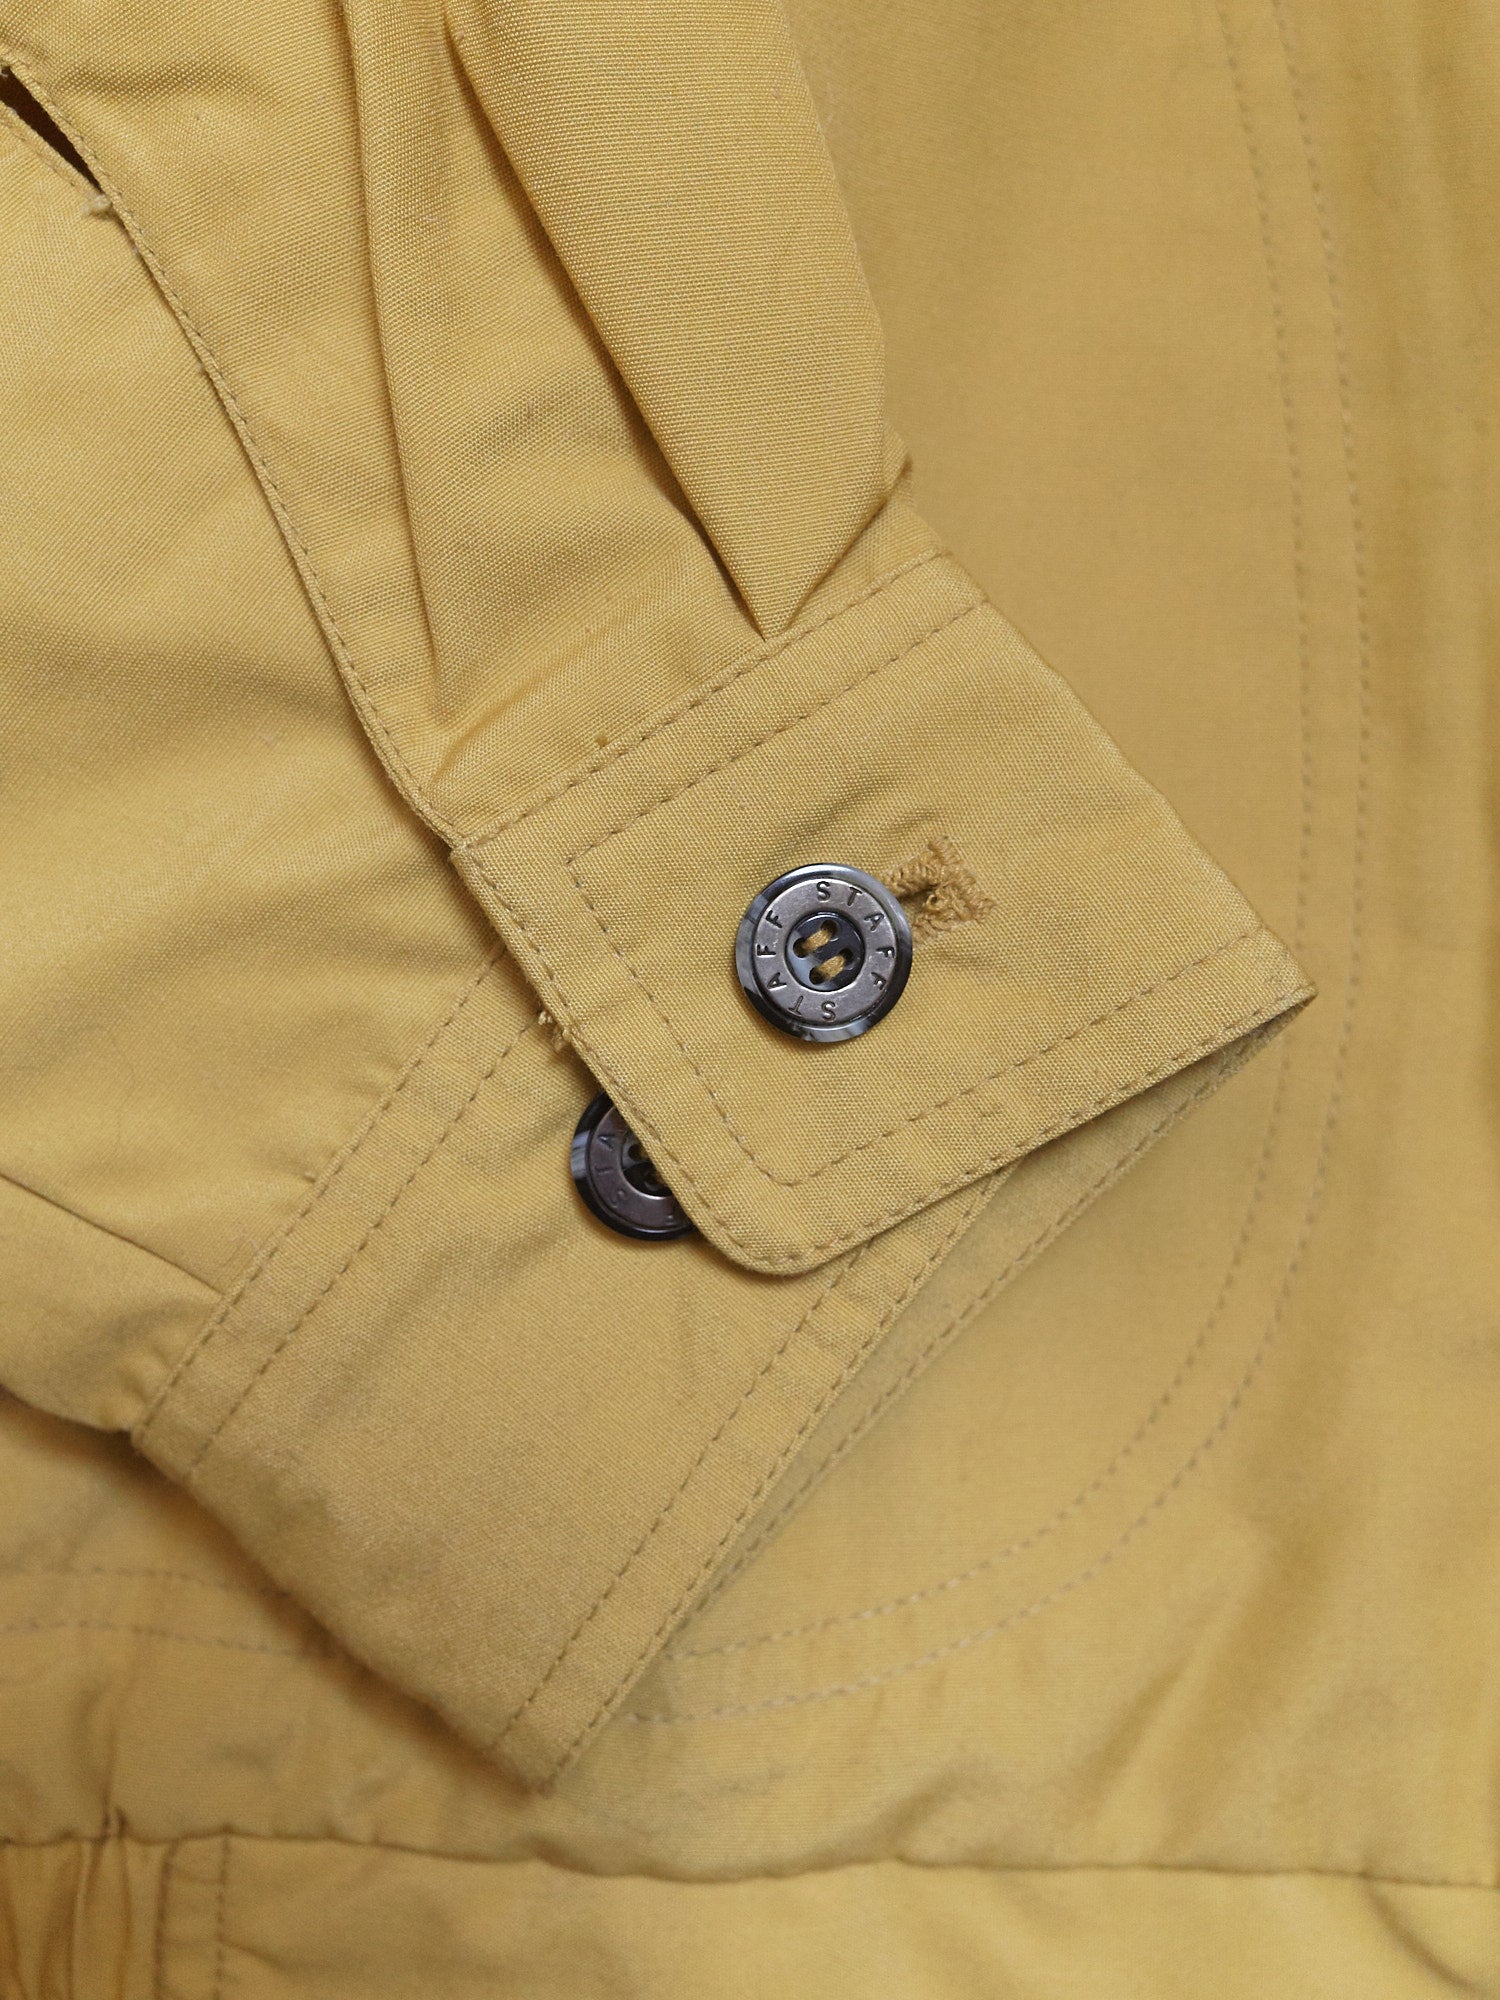 Vintage Staff Jumper mustard poly-cotton flap pocket bomber jacket - size M